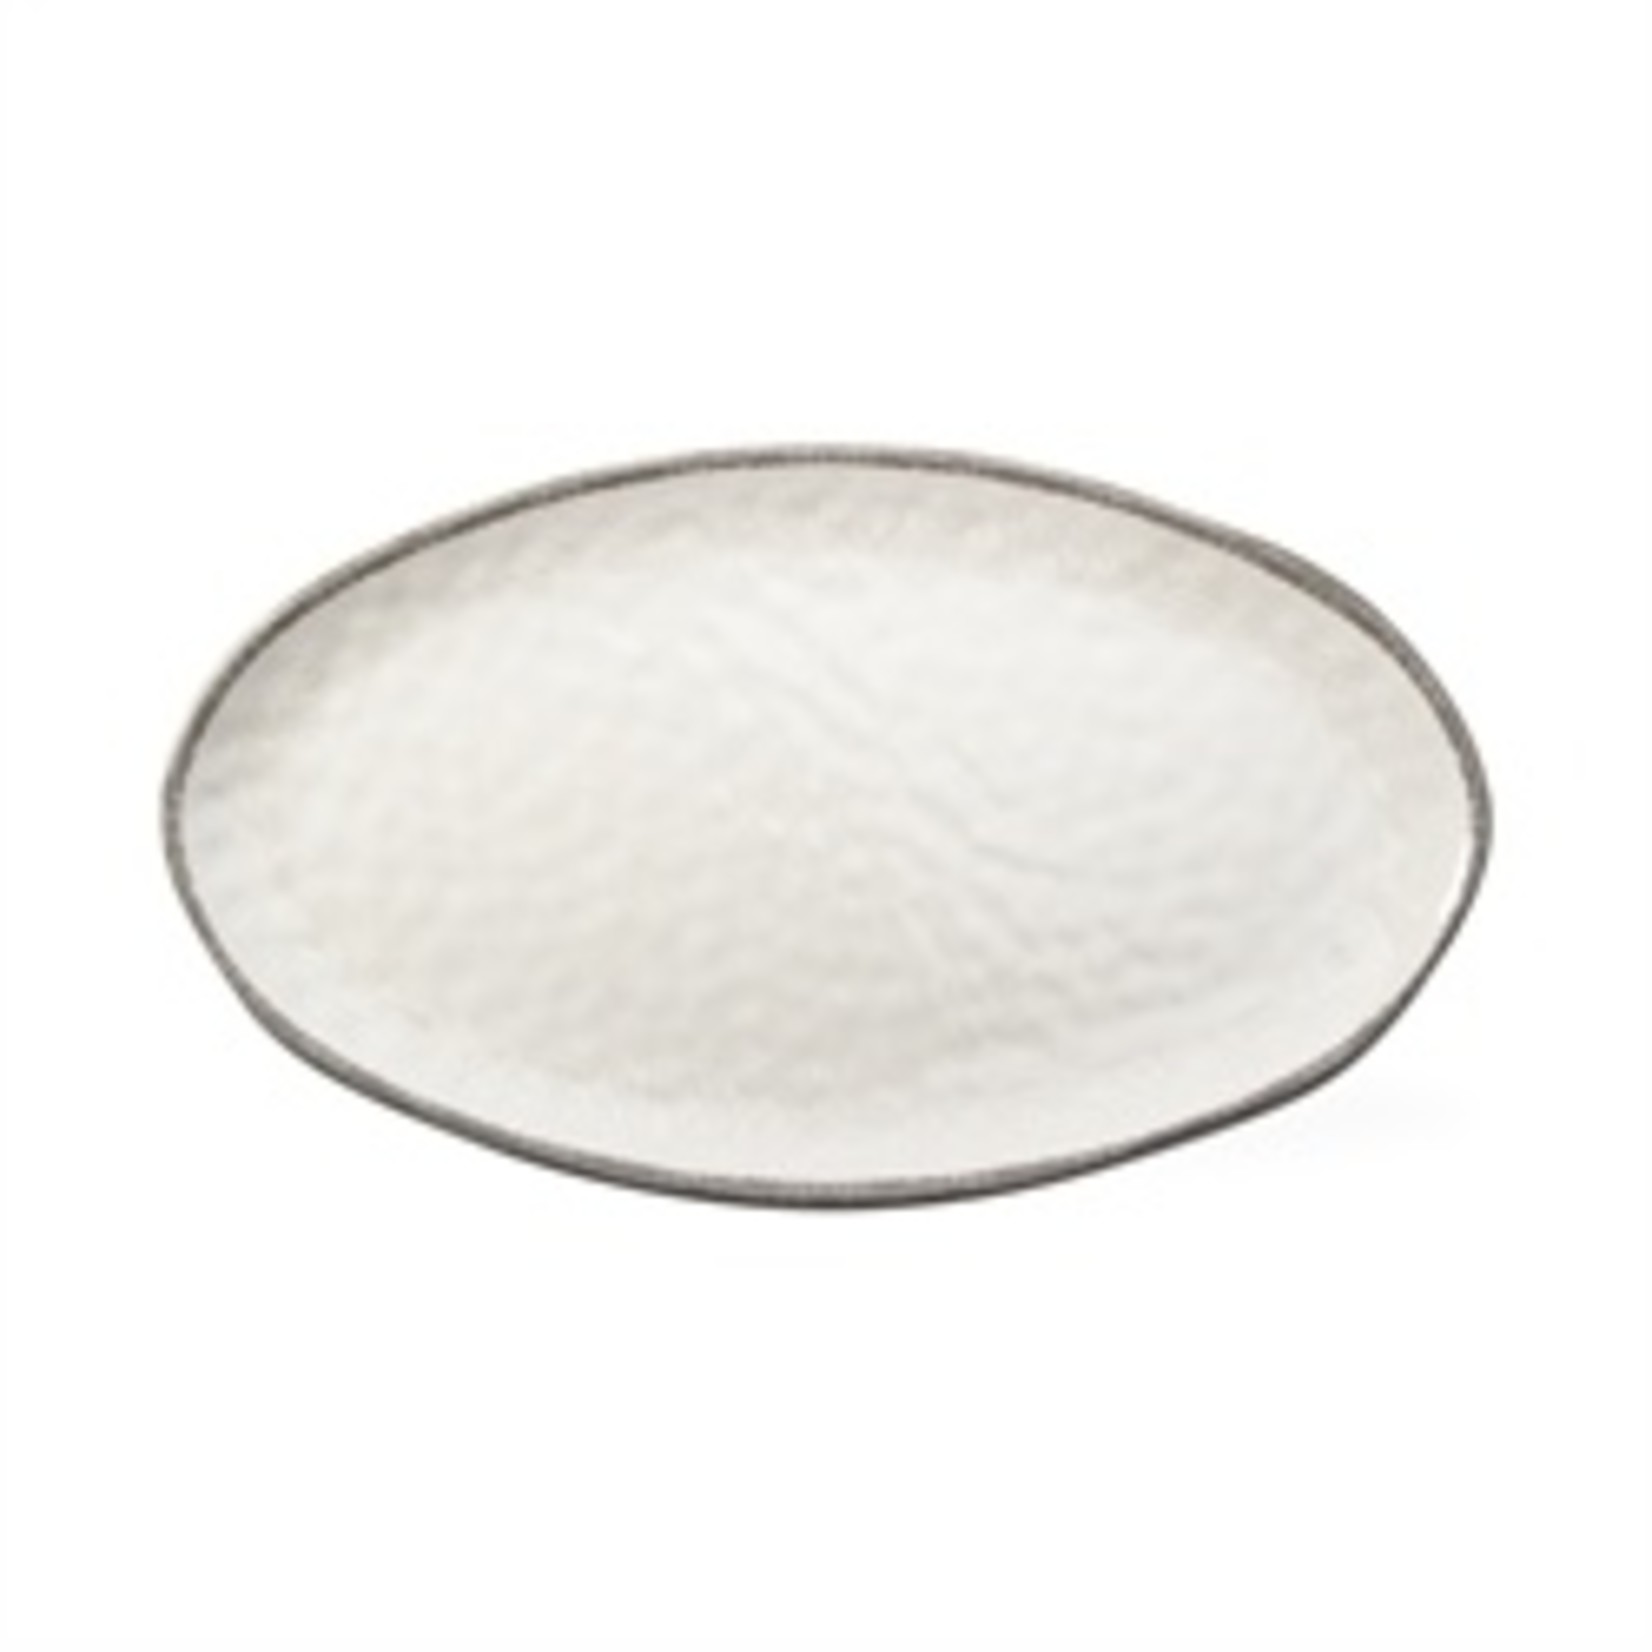 Veranda Ivory - Melamine Oval Platter